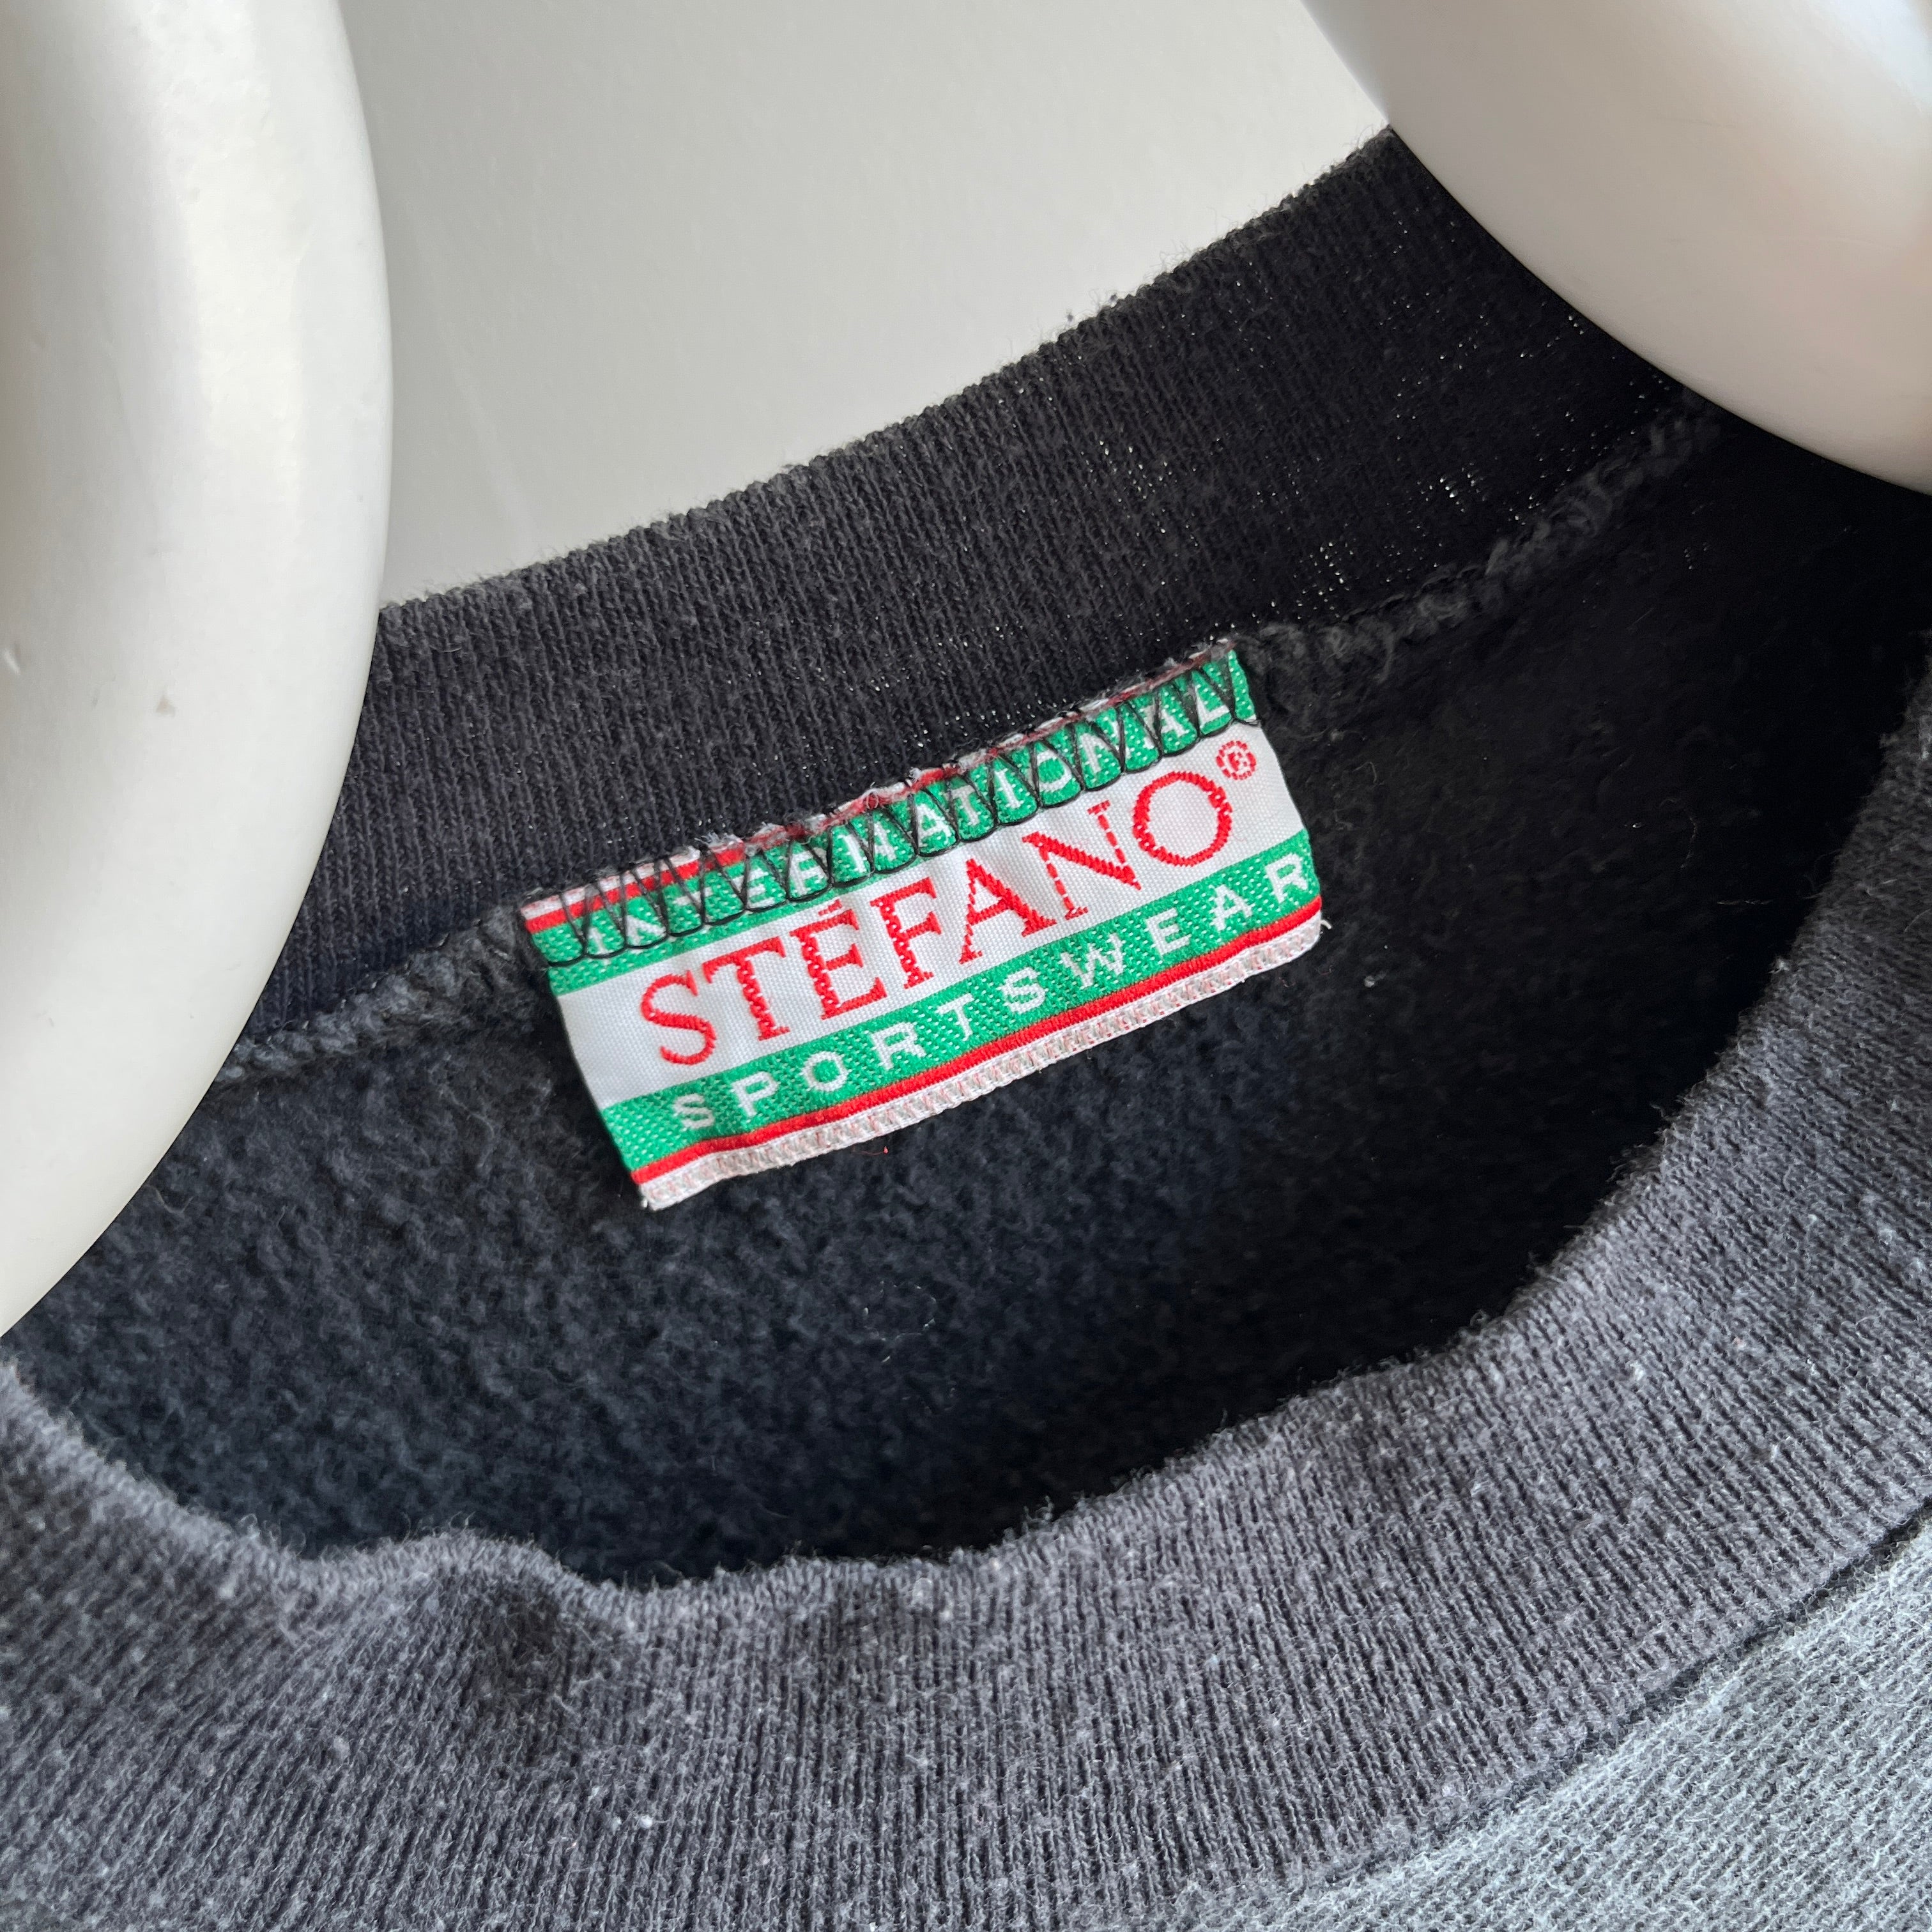 1980s Stefano Structured Sweatshirt - WOW